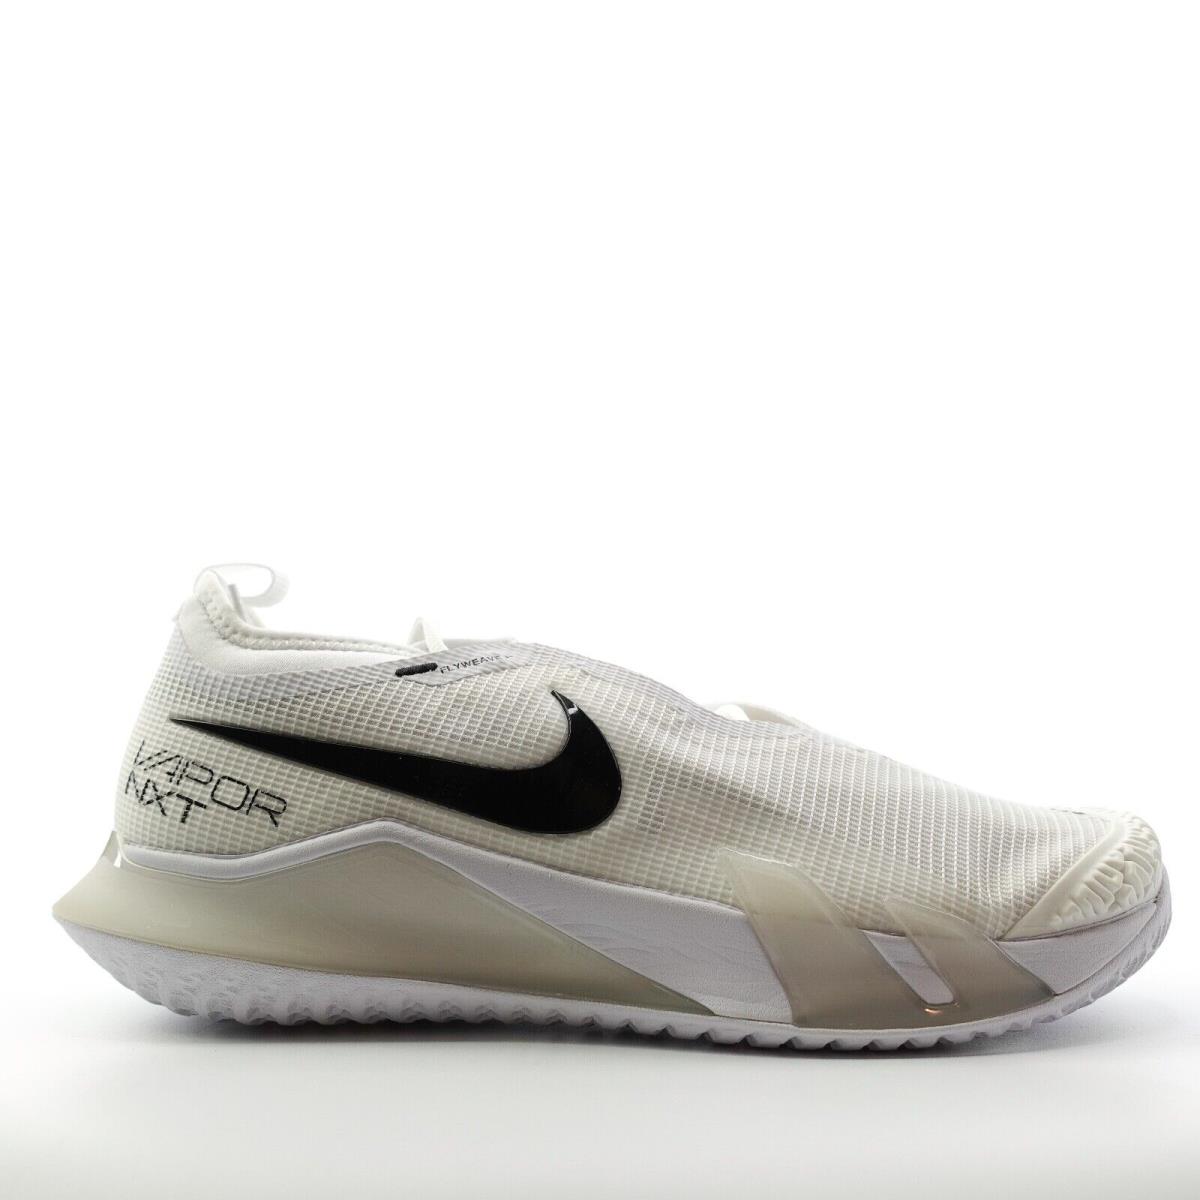 Nike React Vapor Nxt HC Tennis Shoe White Black Wimbledon CV0724-101 Mens 13 - White, Black, Grey